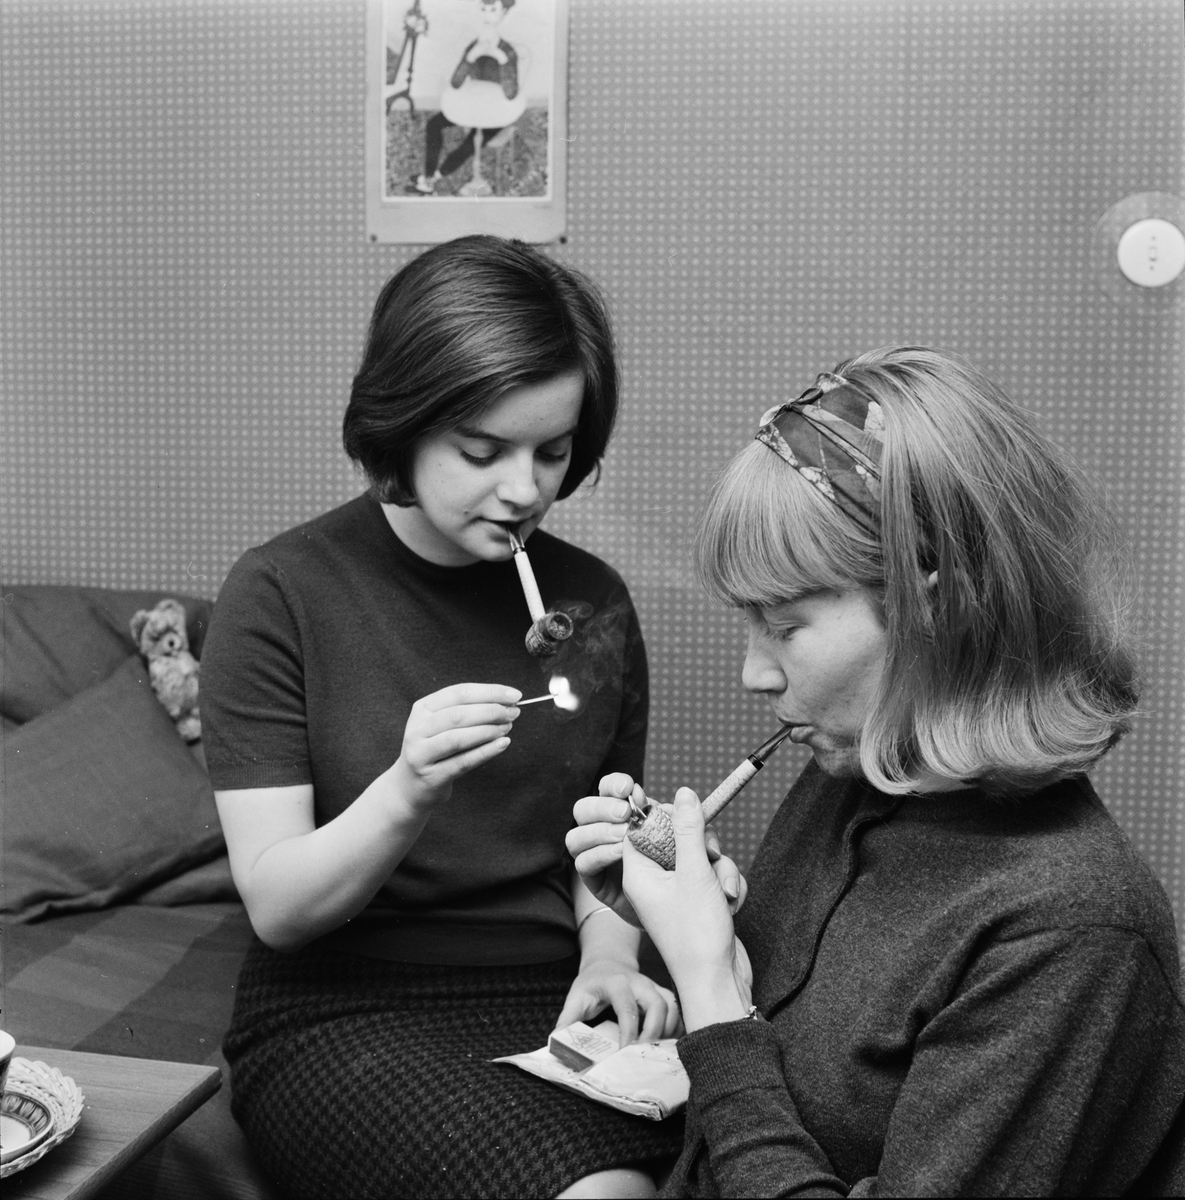 Studentliv - Karin Källner och Reidun Hannerz har bytt ut cigaretten mot pipa, Uppsala 1964